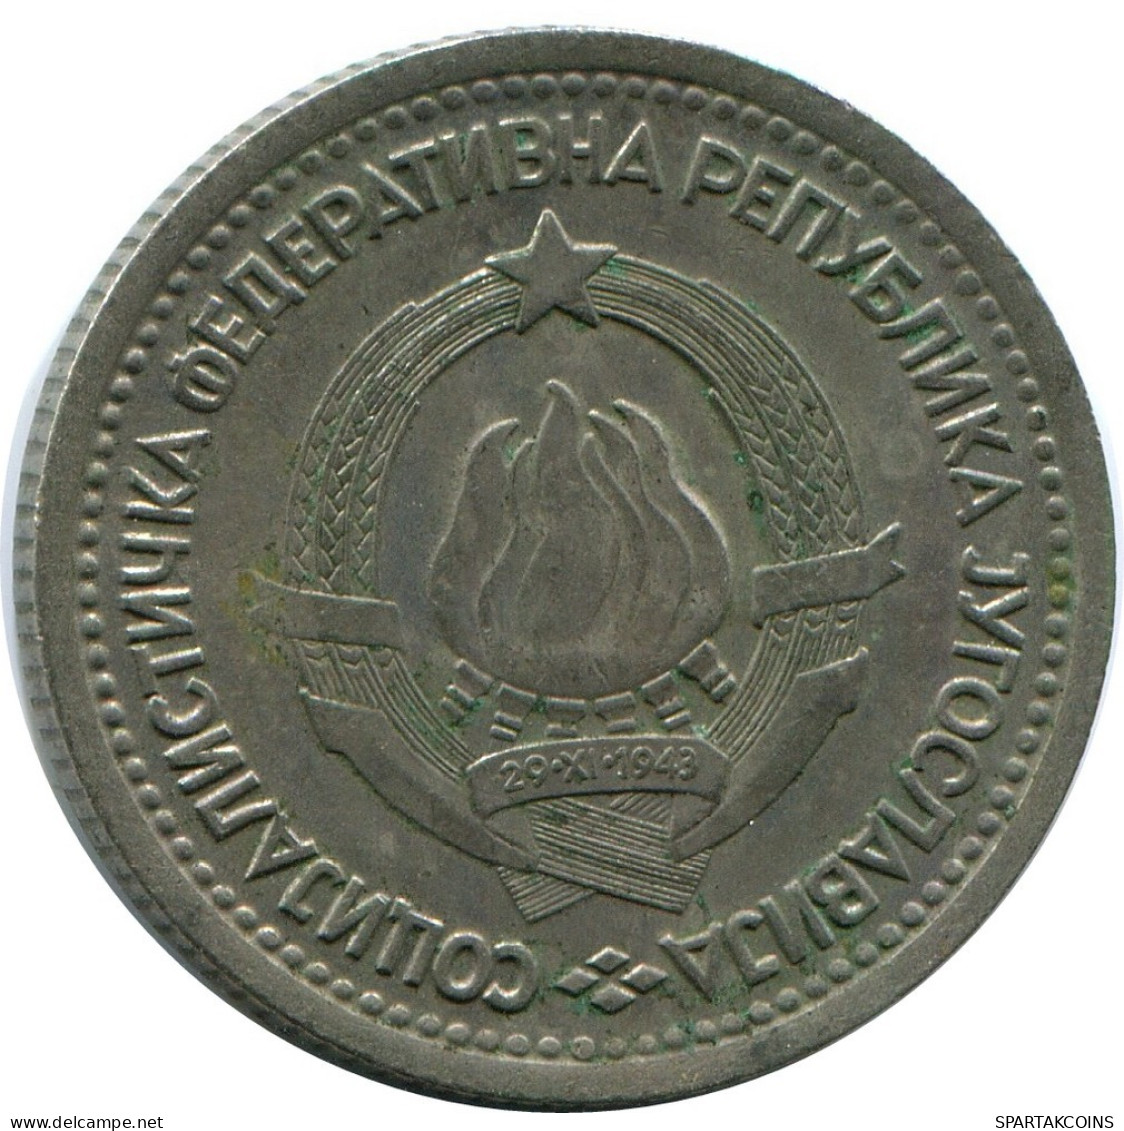 1 DINAR 1965 YUGOSLAVIA Coin #AZ583.U.A - Yugoslavia